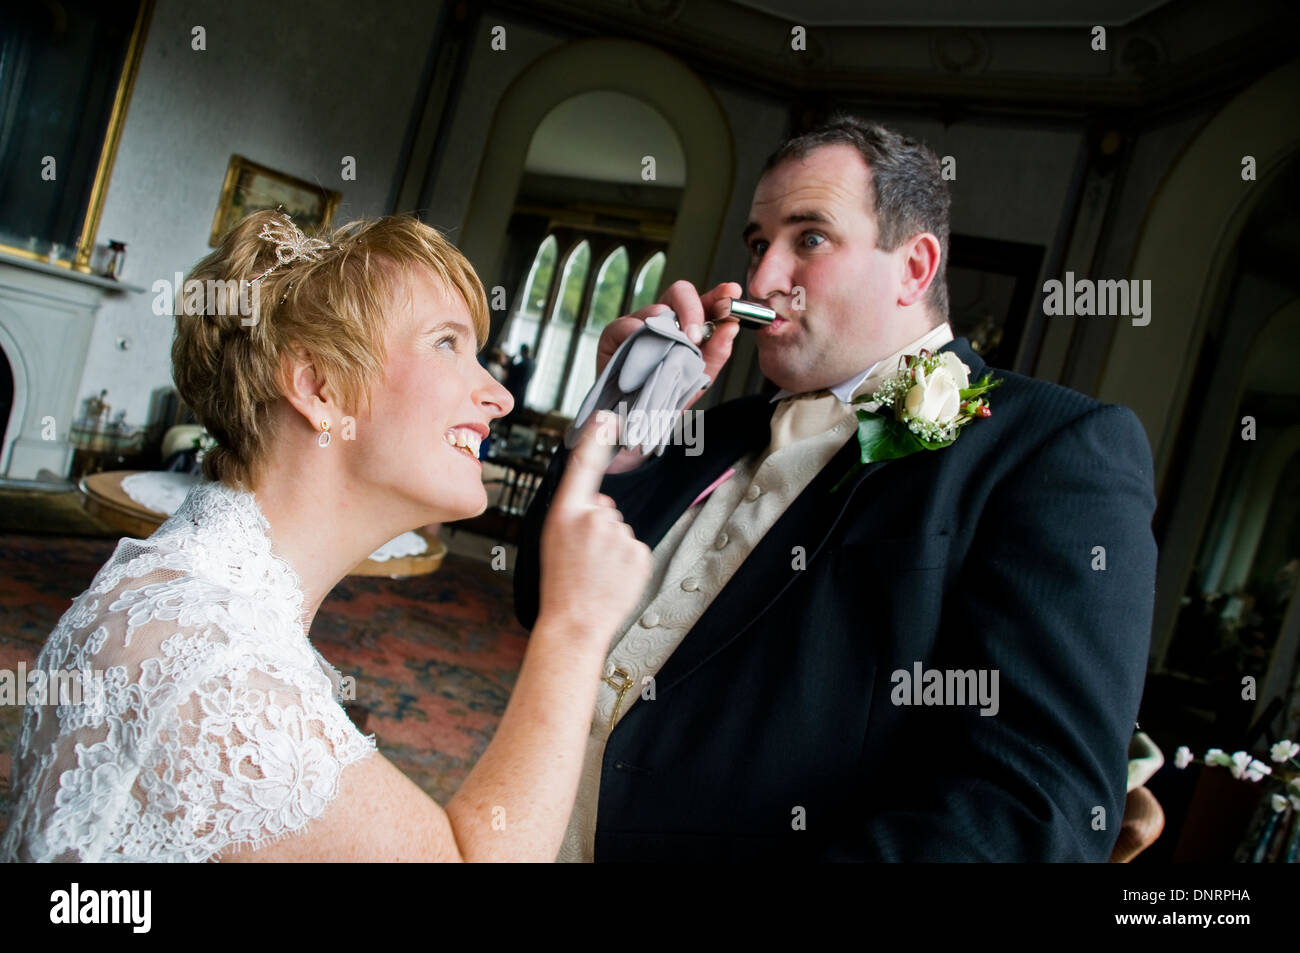 Eine frisch verheiratete Braut erzählt aus ihrem Bräutigam, wenn sie ihn  trinken aus einem Flachmann findet Stockfotografie - Alamy